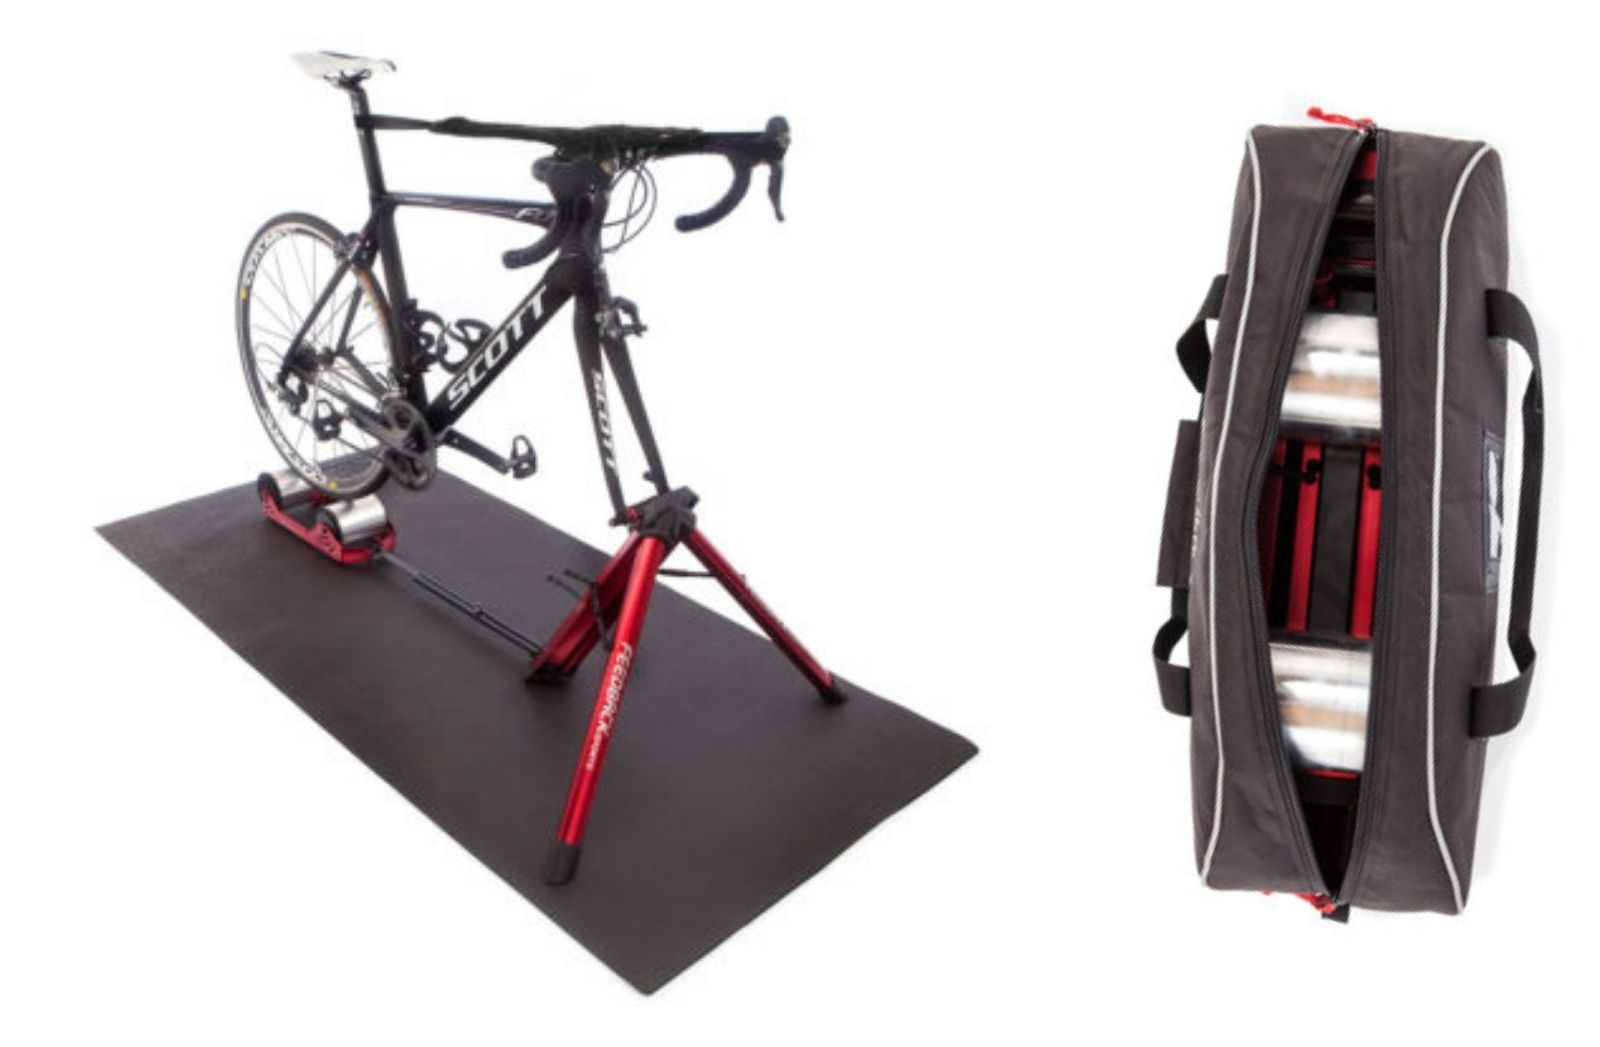 demonstration Antagelser, antagelser. Gætte Frustration Best Cyclocross Accessories - Have Your Smoothest Race Day Ever - Bikerumor